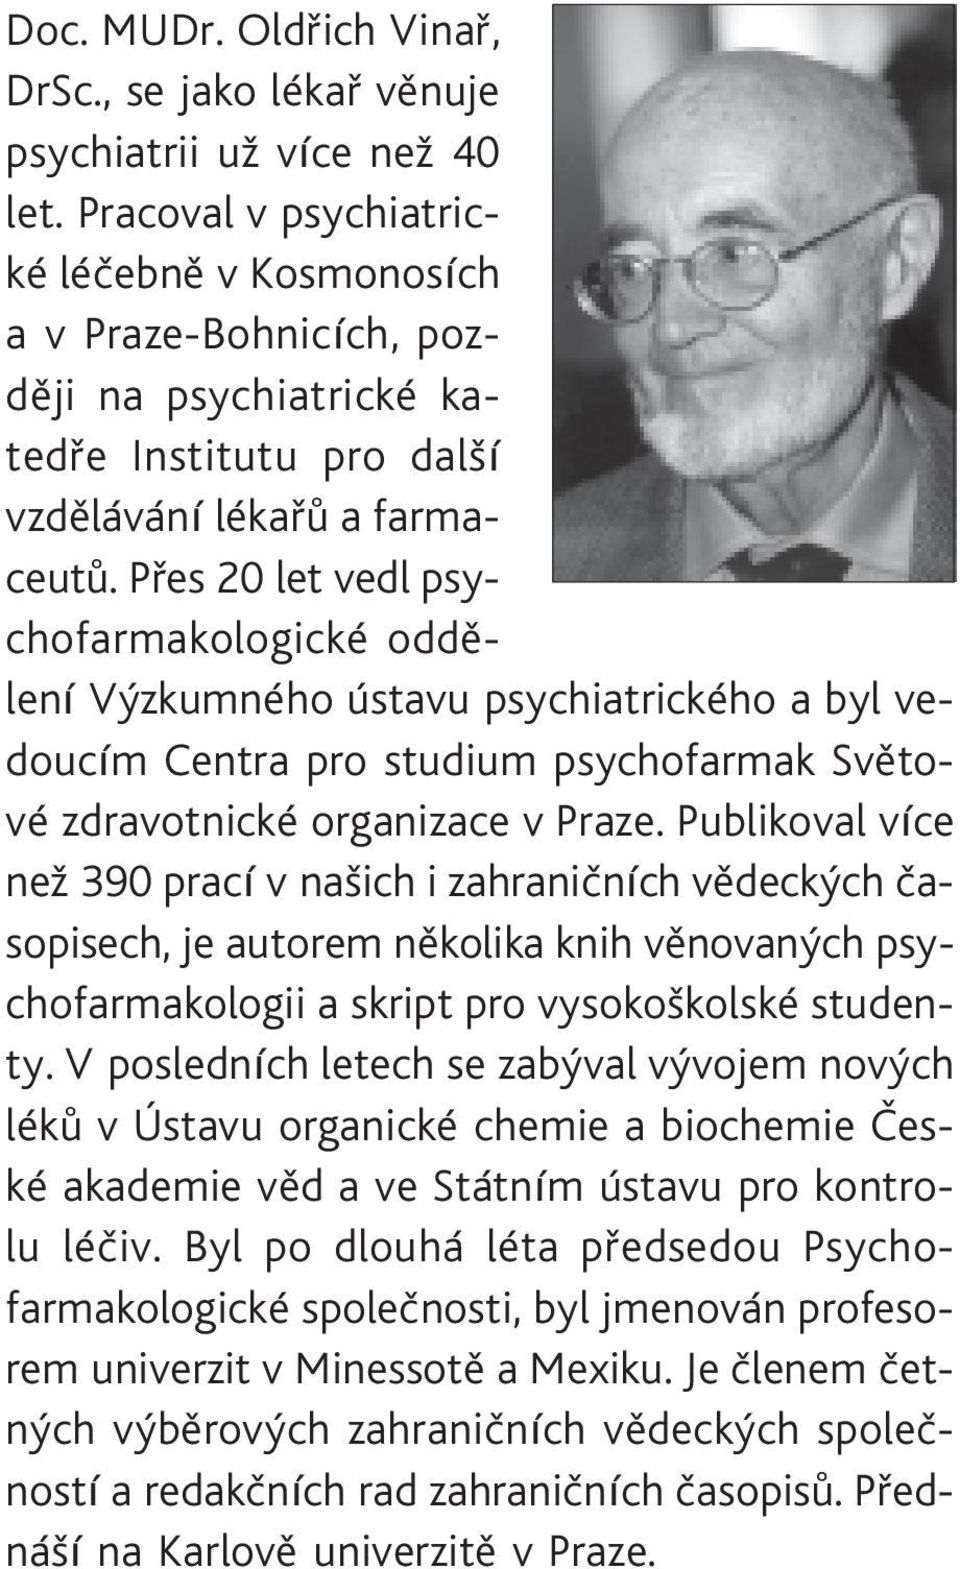 Pøes 20 let vedl psychofarmakologické oddìlení Výzkumného ústavu psychiatrického a byl vedoucím Centra pro studium psychofarmak Svìtové zdravotnické organizace v Praze.